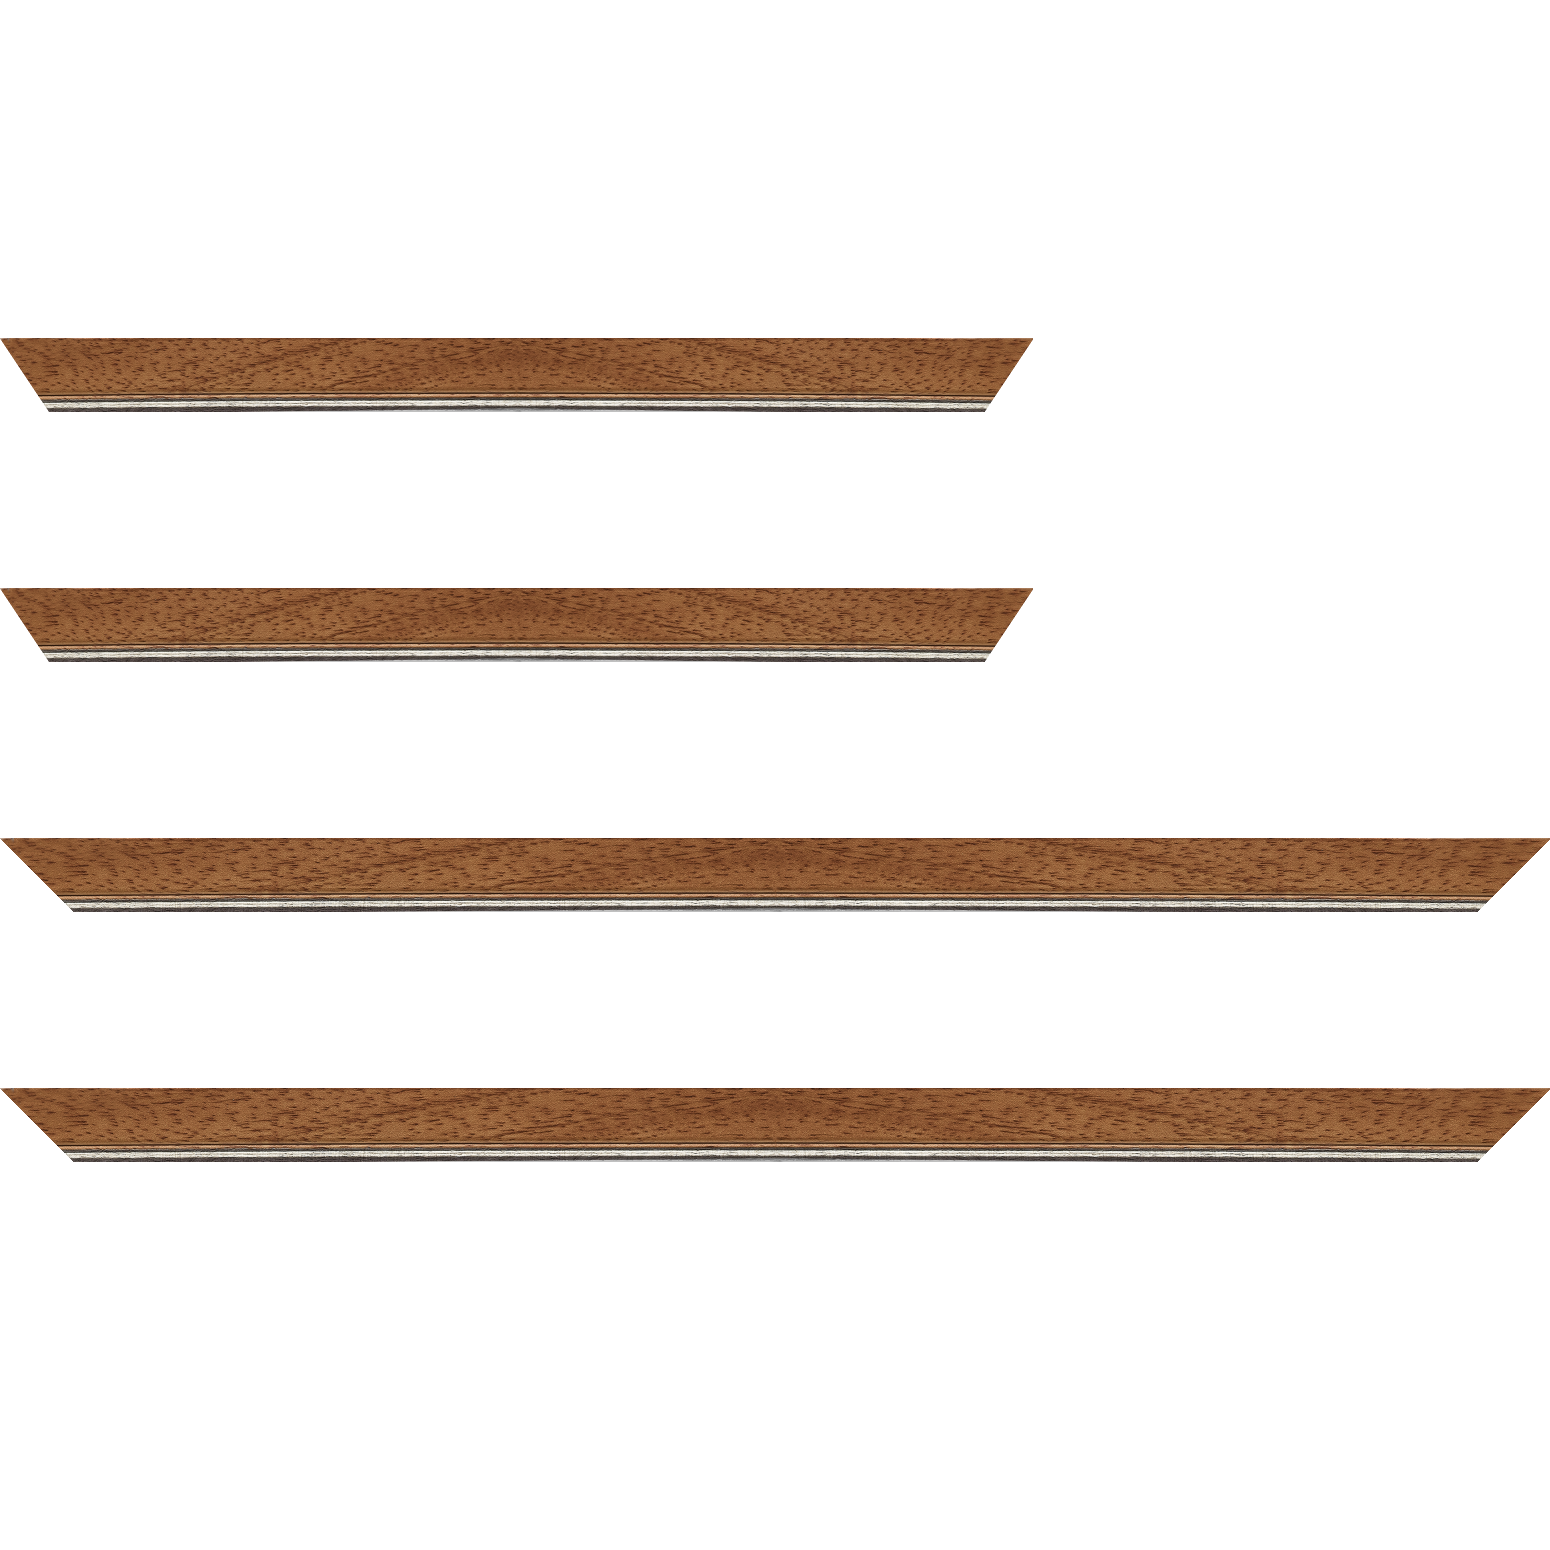 Baguette bois profil plat largeur 2.5cm couleur marron ton bois filet argent - 34x40